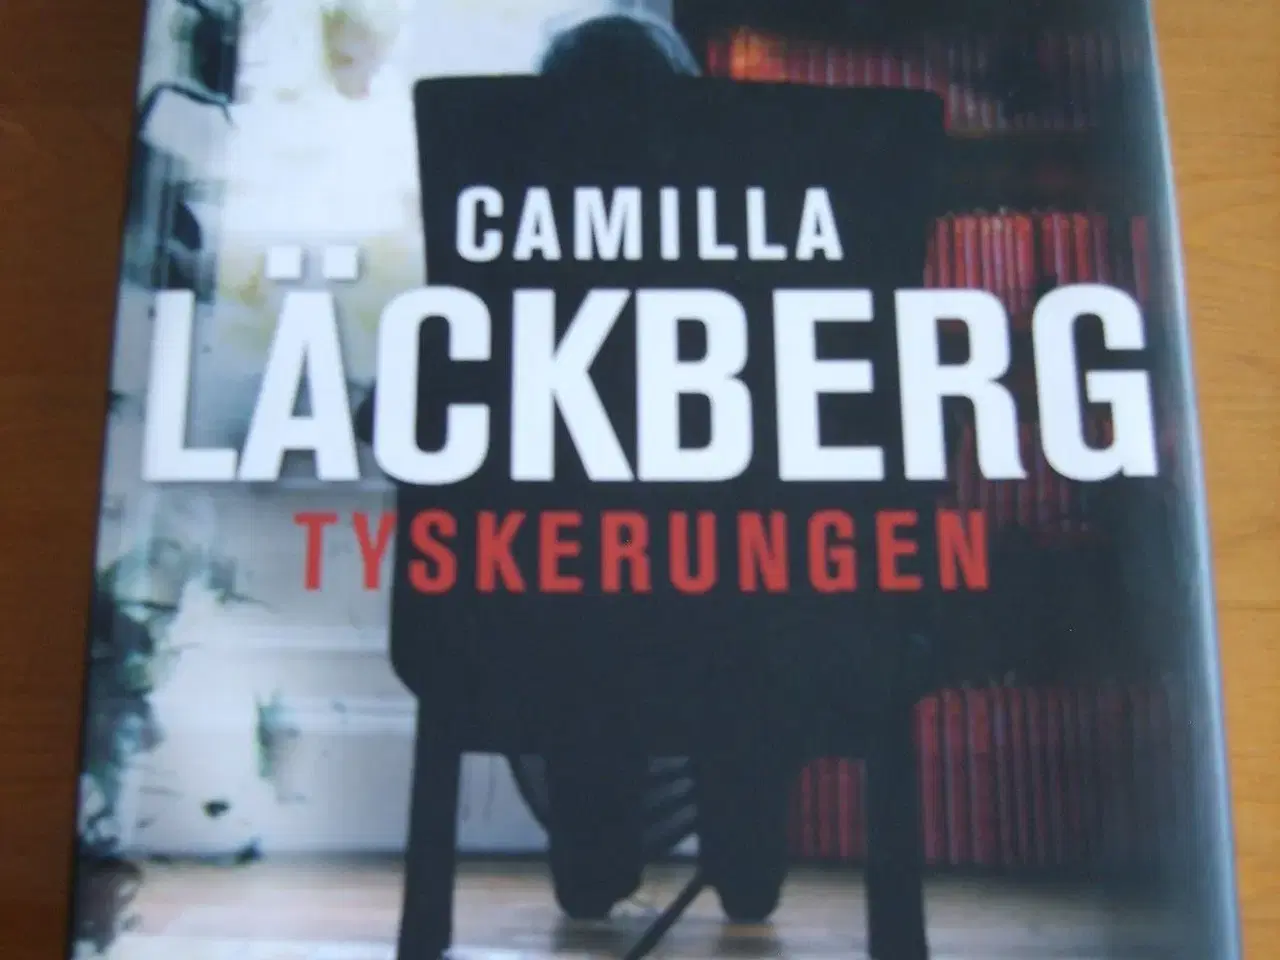 Billede 1 - Camilla Låckberg - Tyskerungen.